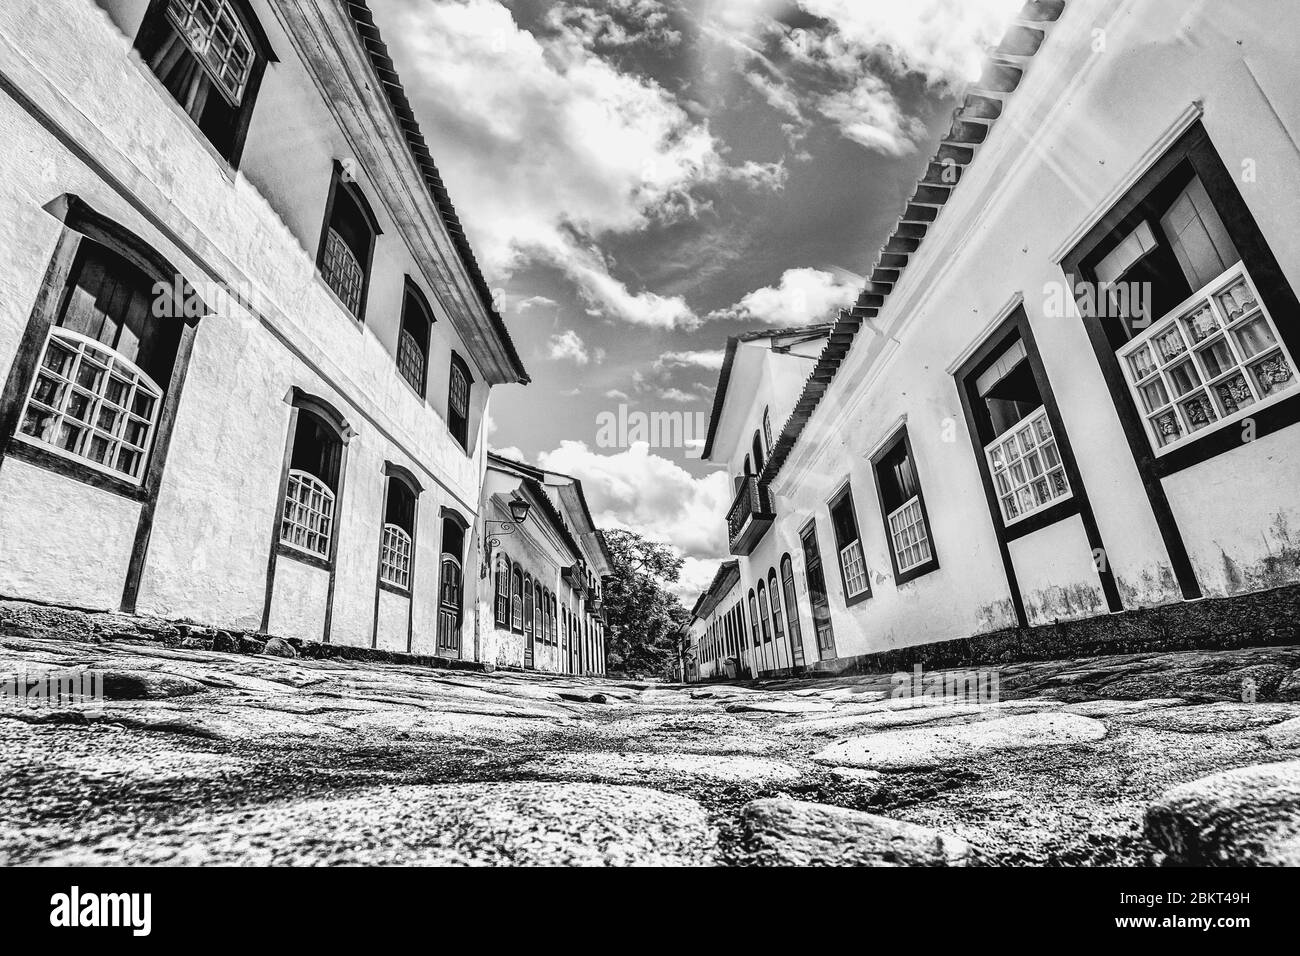 Vieille rue et maisons coloniales portugaises dans le centre-ville historique de Paraty, Rio de Janeiro, Brésil Banque D'Images